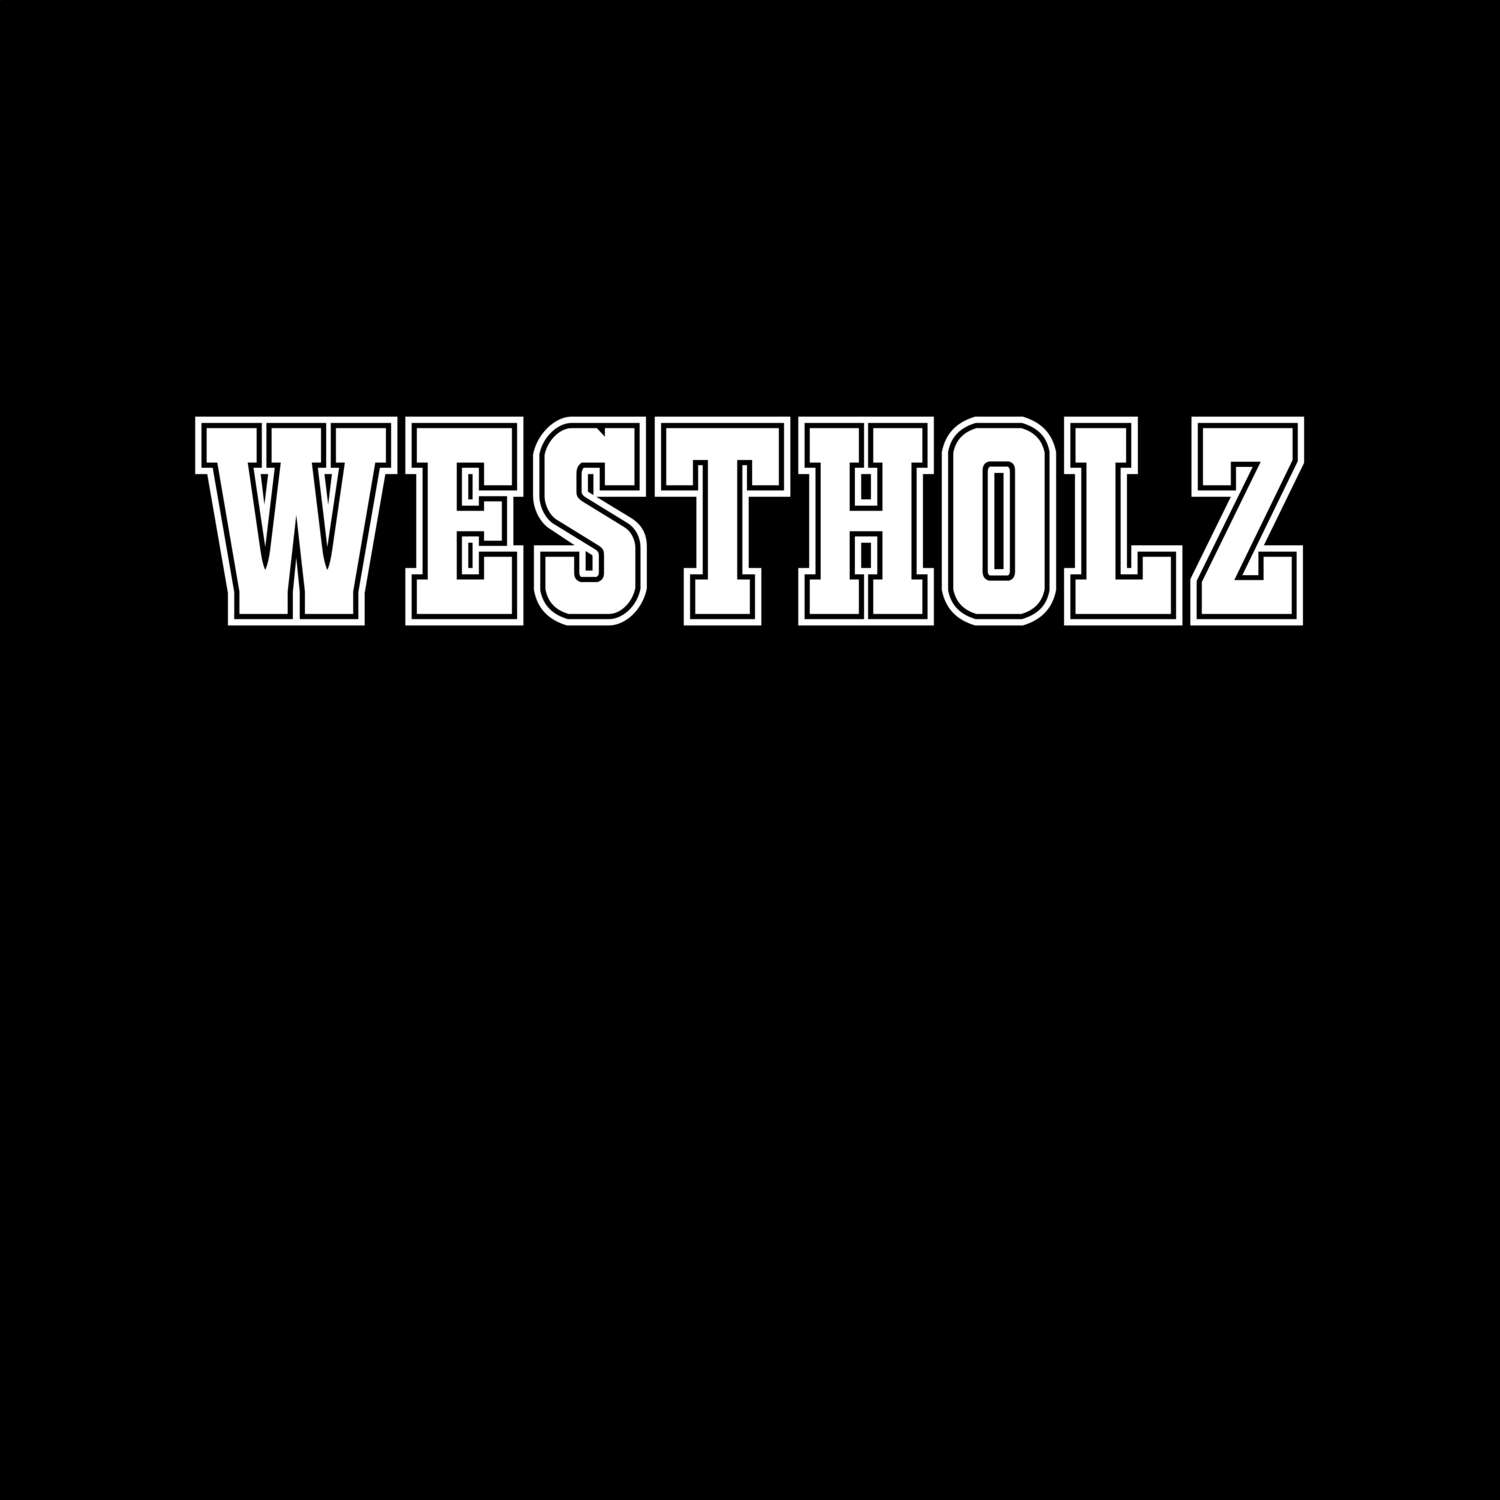 Westholz T-Shirt »Classic«